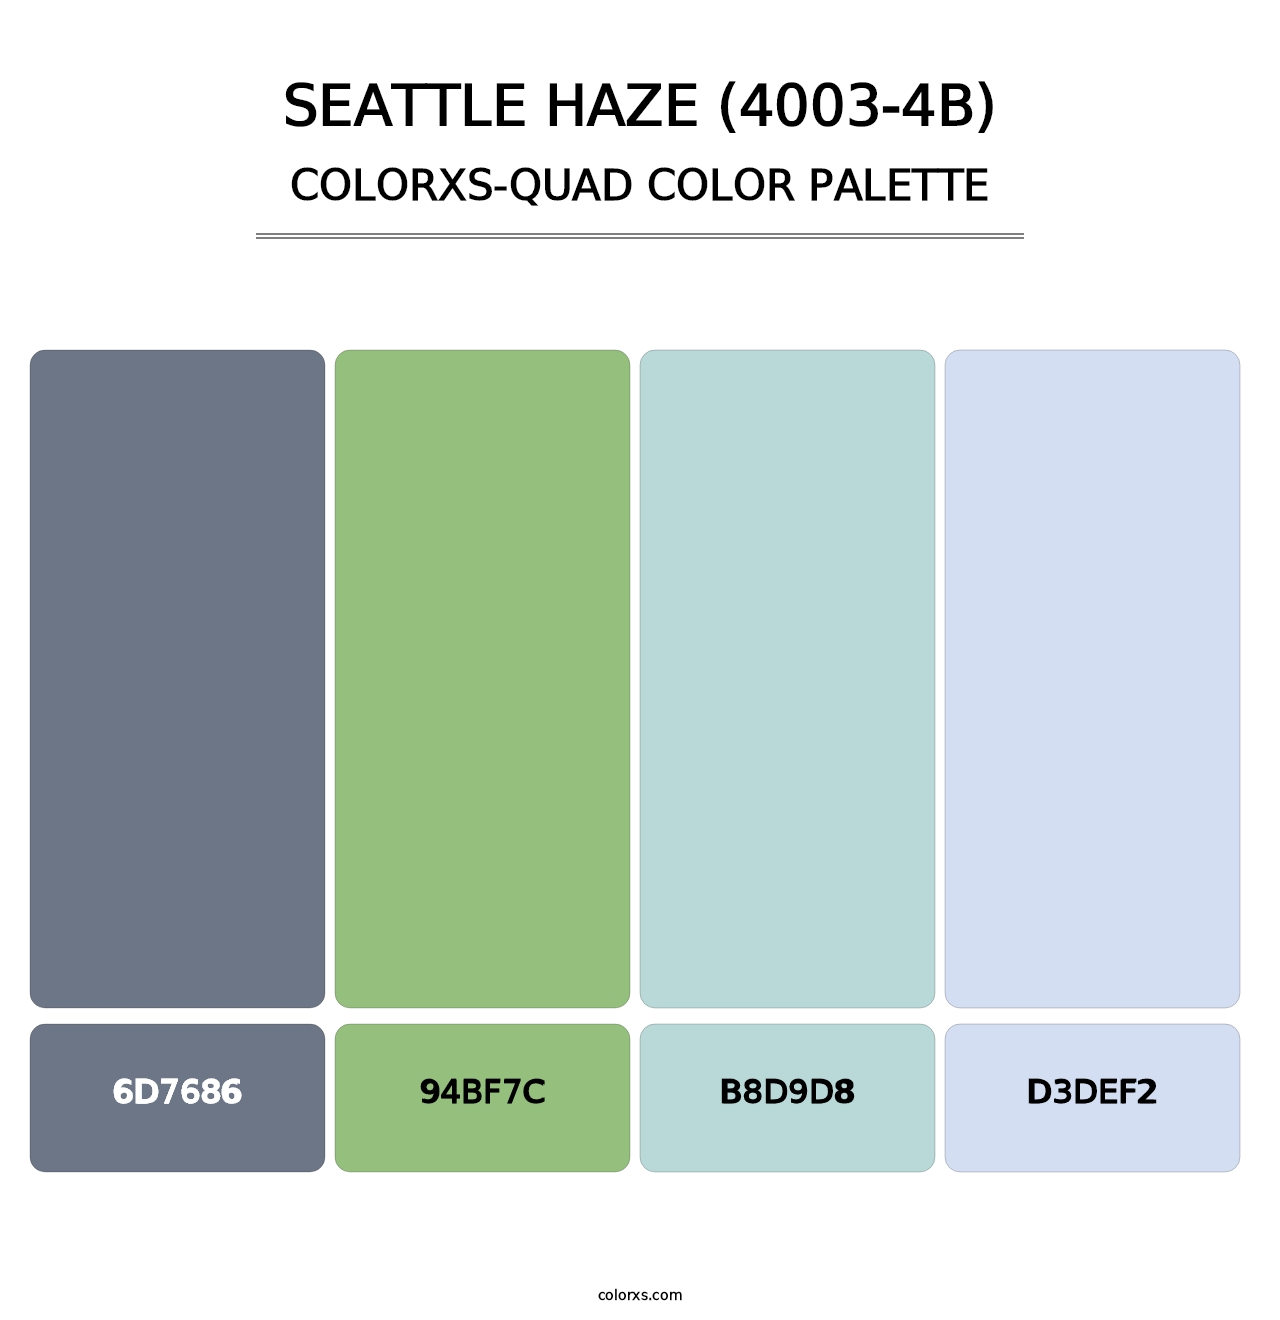 Seattle Haze (4003-4B) - Colorxs Quad Palette